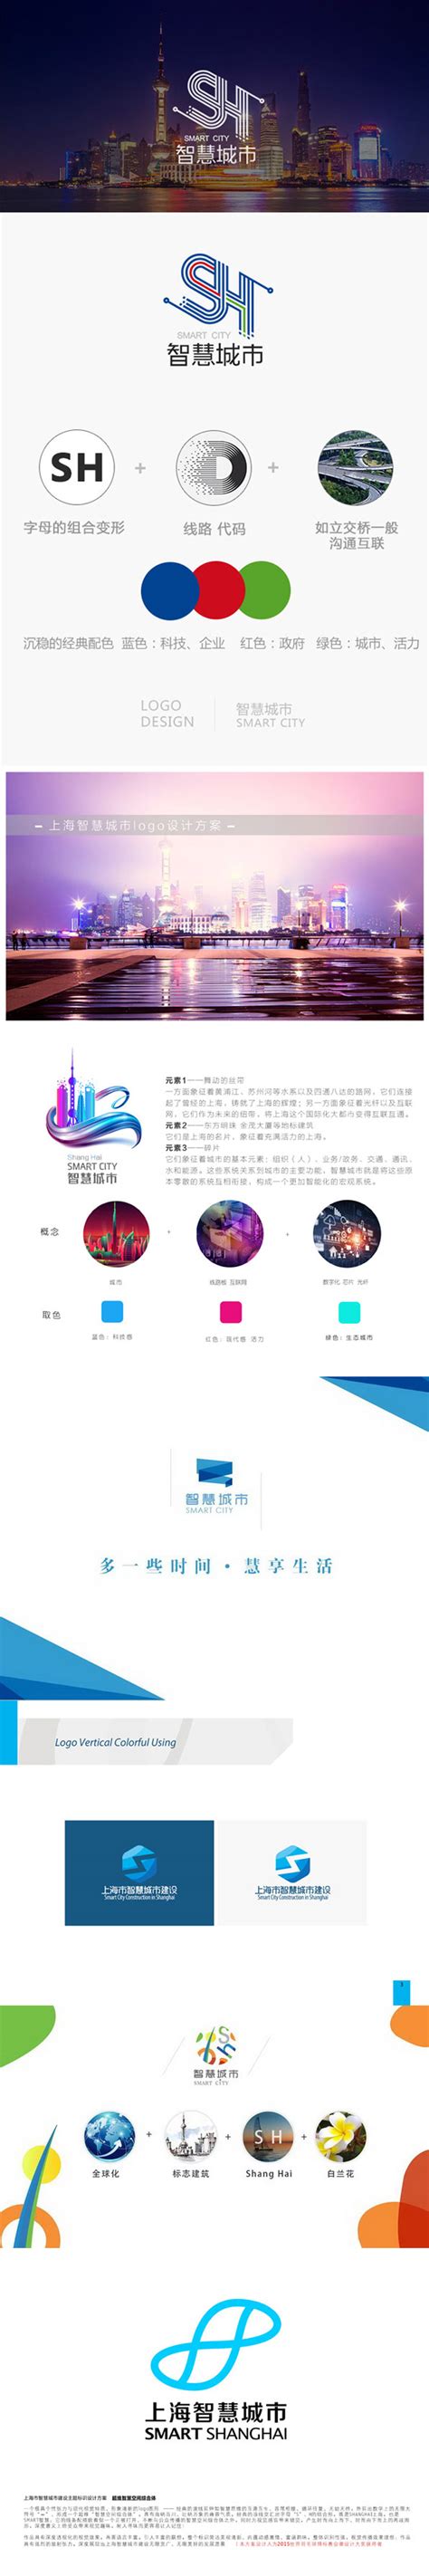 苏州logo设计丨-上海智慧城市发布全新品牌形象标识苏州品牌形象全案设计— 极地视觉高端logo设计及品牌设计公司